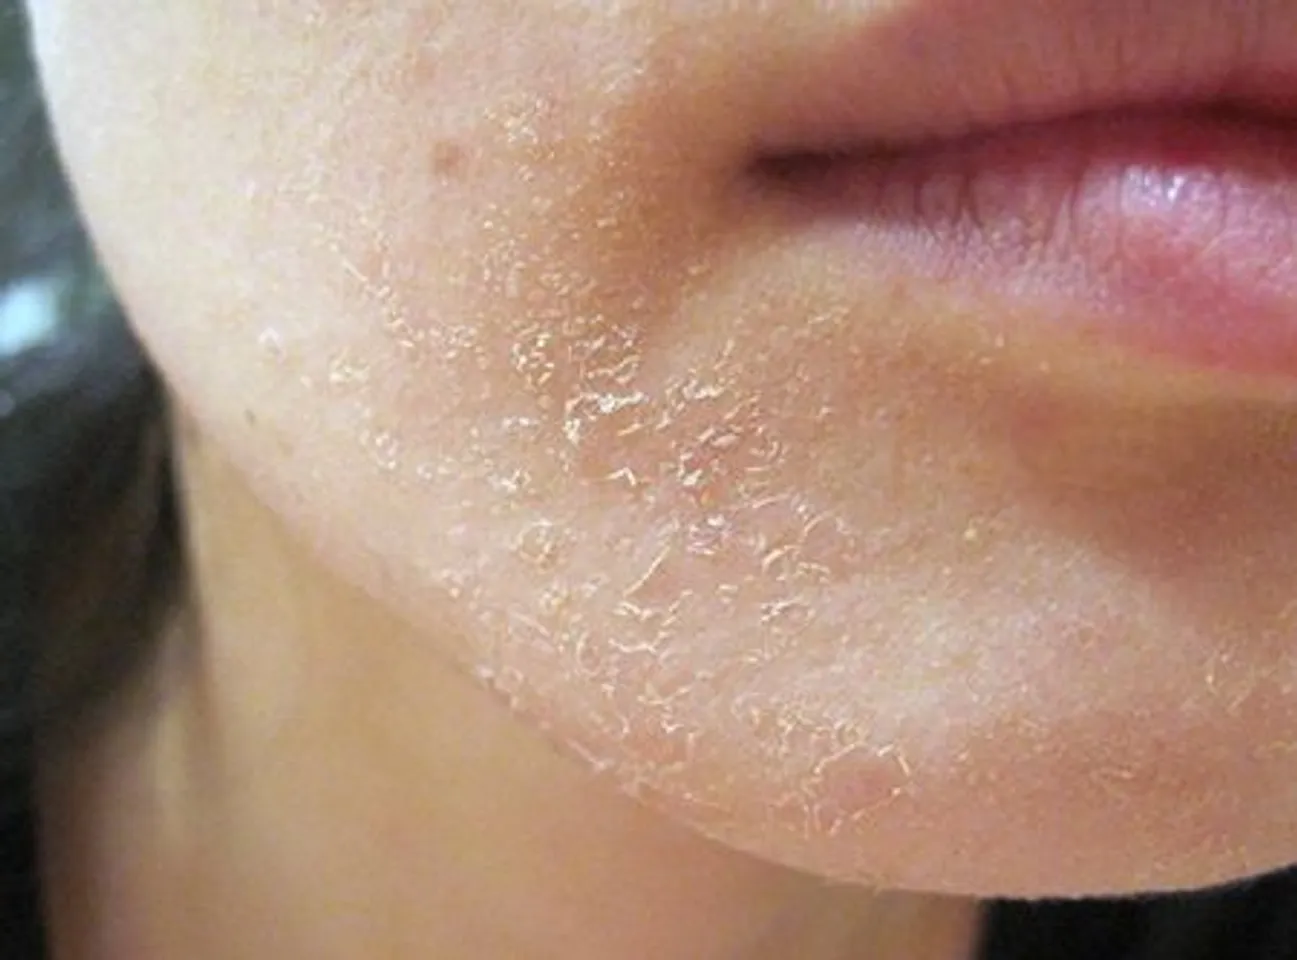 Kem dưỡng ẩm Eucerin này được khuyên dùng cho da thường đến khô, điều trị hiện tượng da khô nứt nẻ